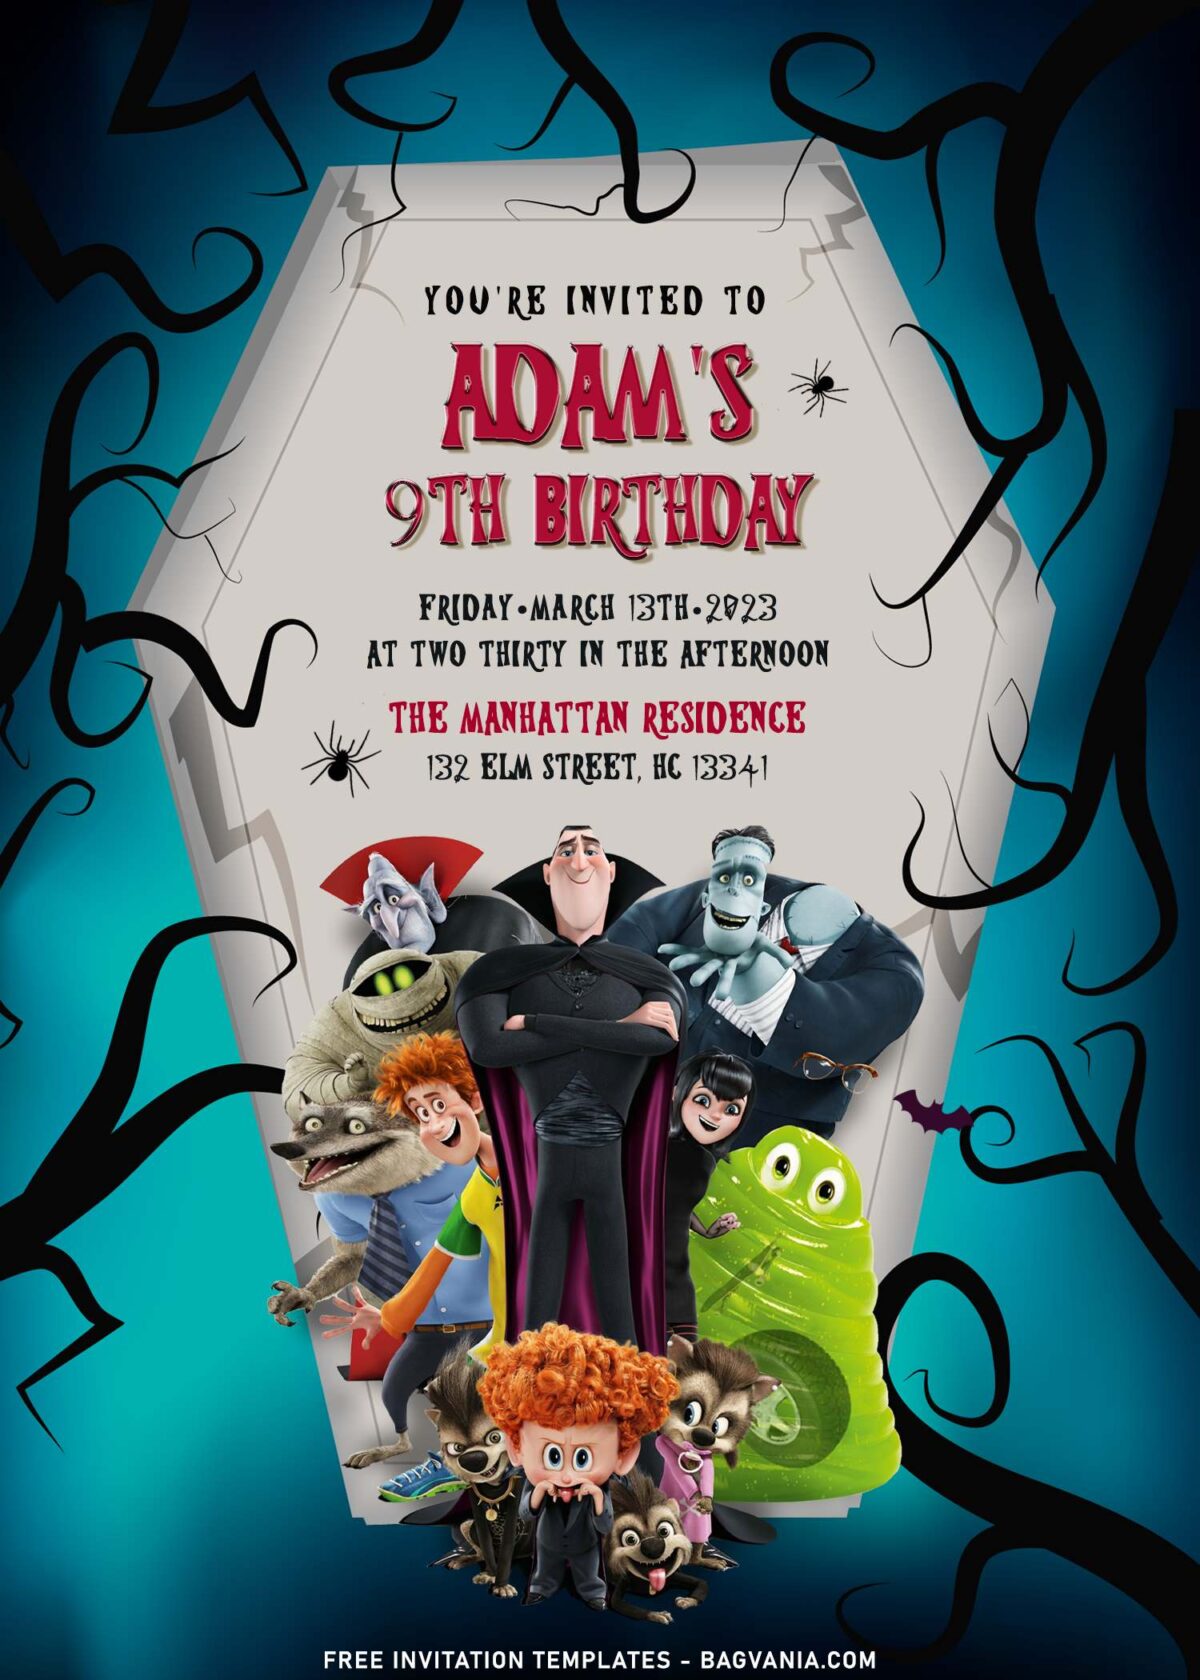 11+ Spooky Hotel Transylvania Birthday Invitation Templates